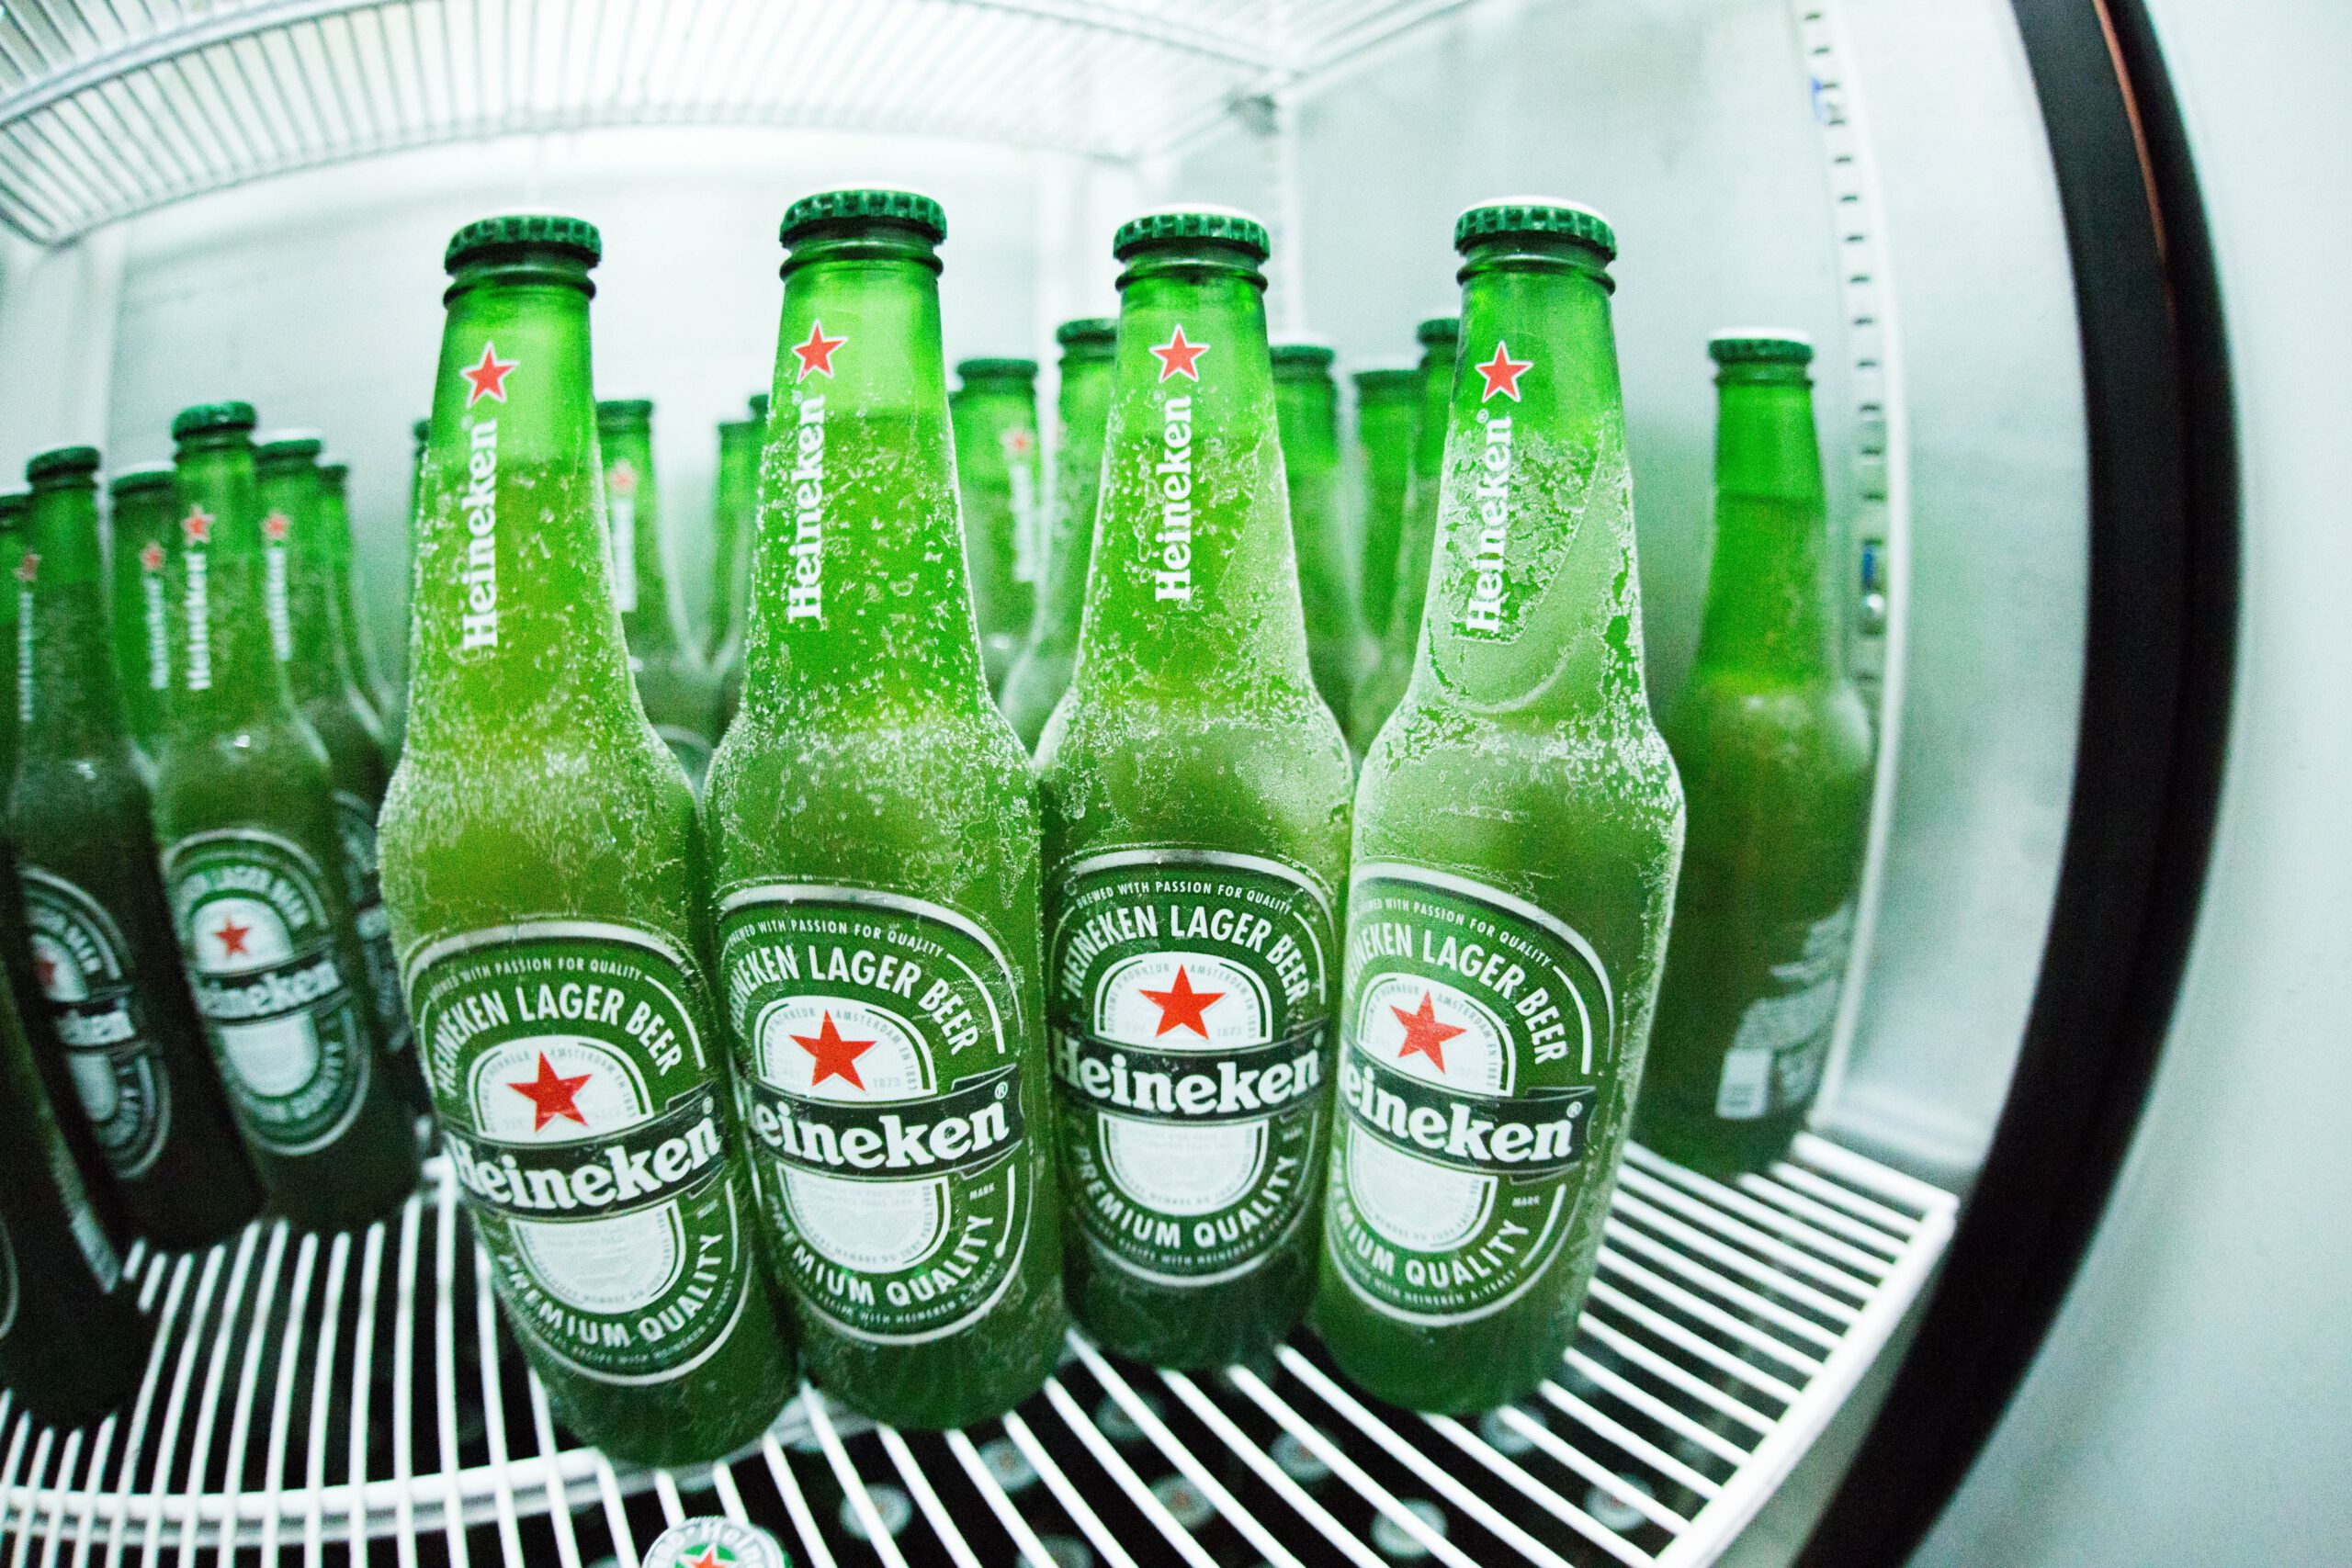 Zielone butelki z popularnym piwem, stojące w lodówce w sklepie monopolowym